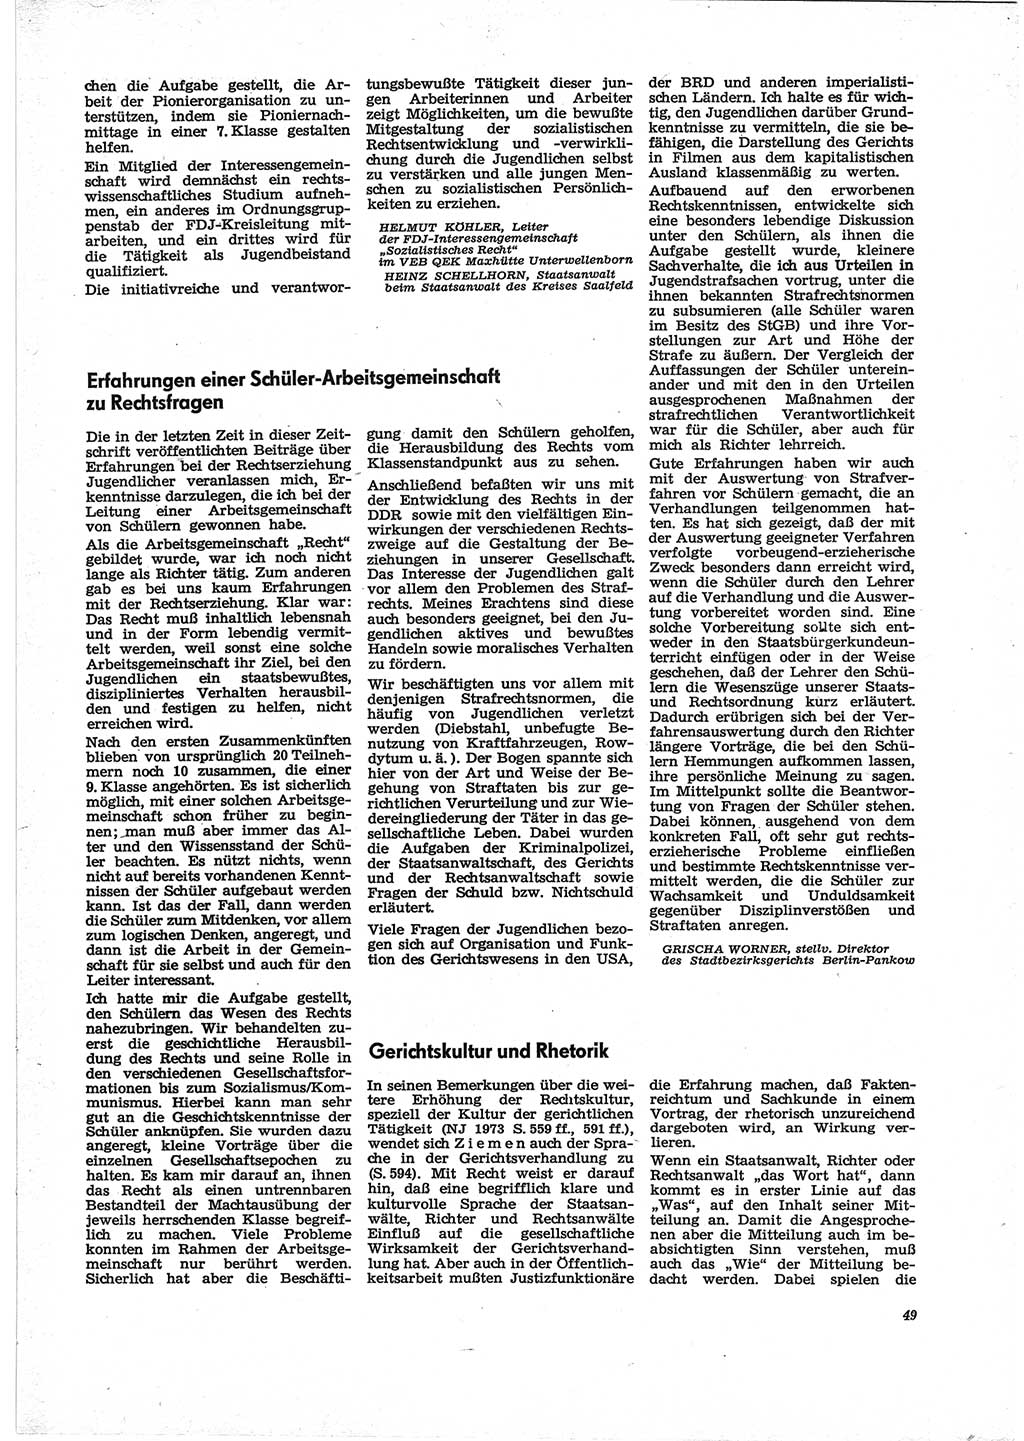 Neue Justiz (NJ), Zeitschrift für Recht und Rechtswissenschaft [Deutsche Demokratische Republik (DDR)], 28. Jahrgang 1974, Seite 49 (NJ DDR 1974, S. 49)